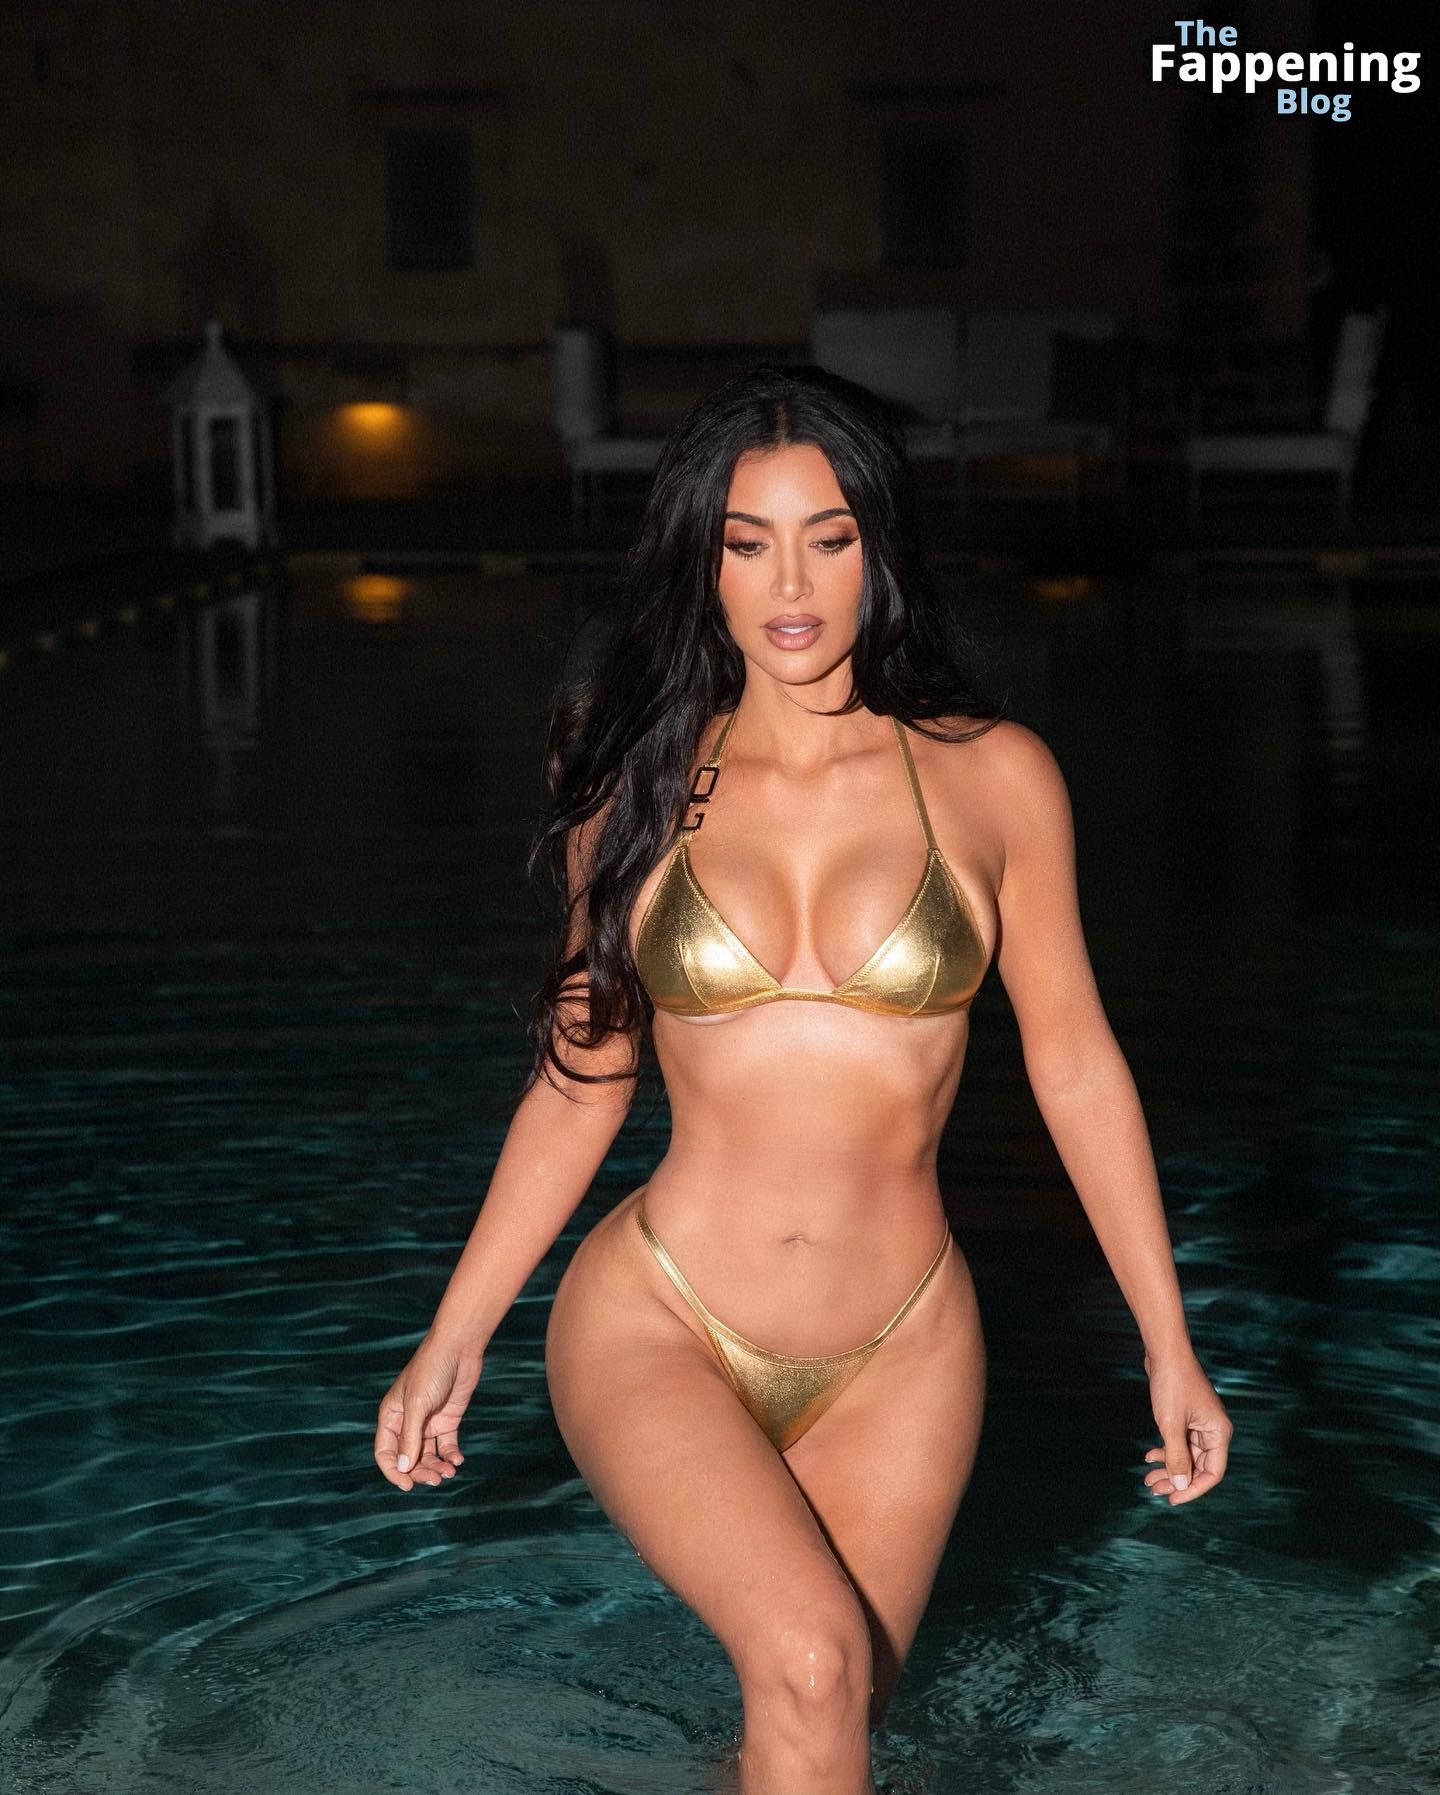 Kim-Kardashian-Sexy-The-Fappening-Blog-3-1.jpg